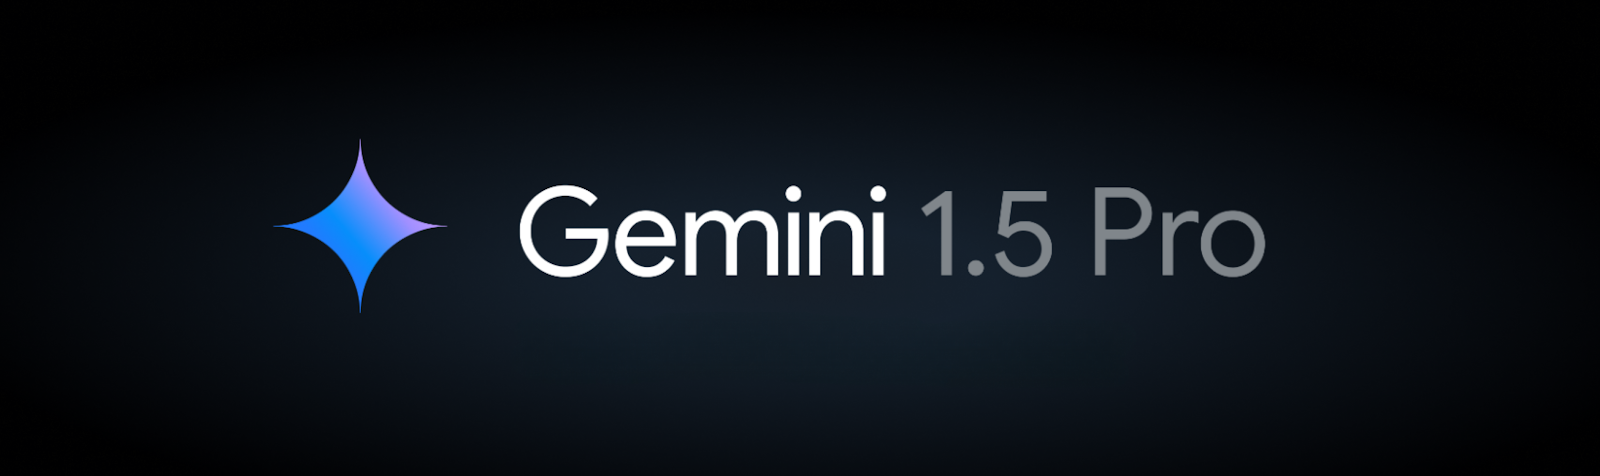 Google lança Gemini 1.5 Pro